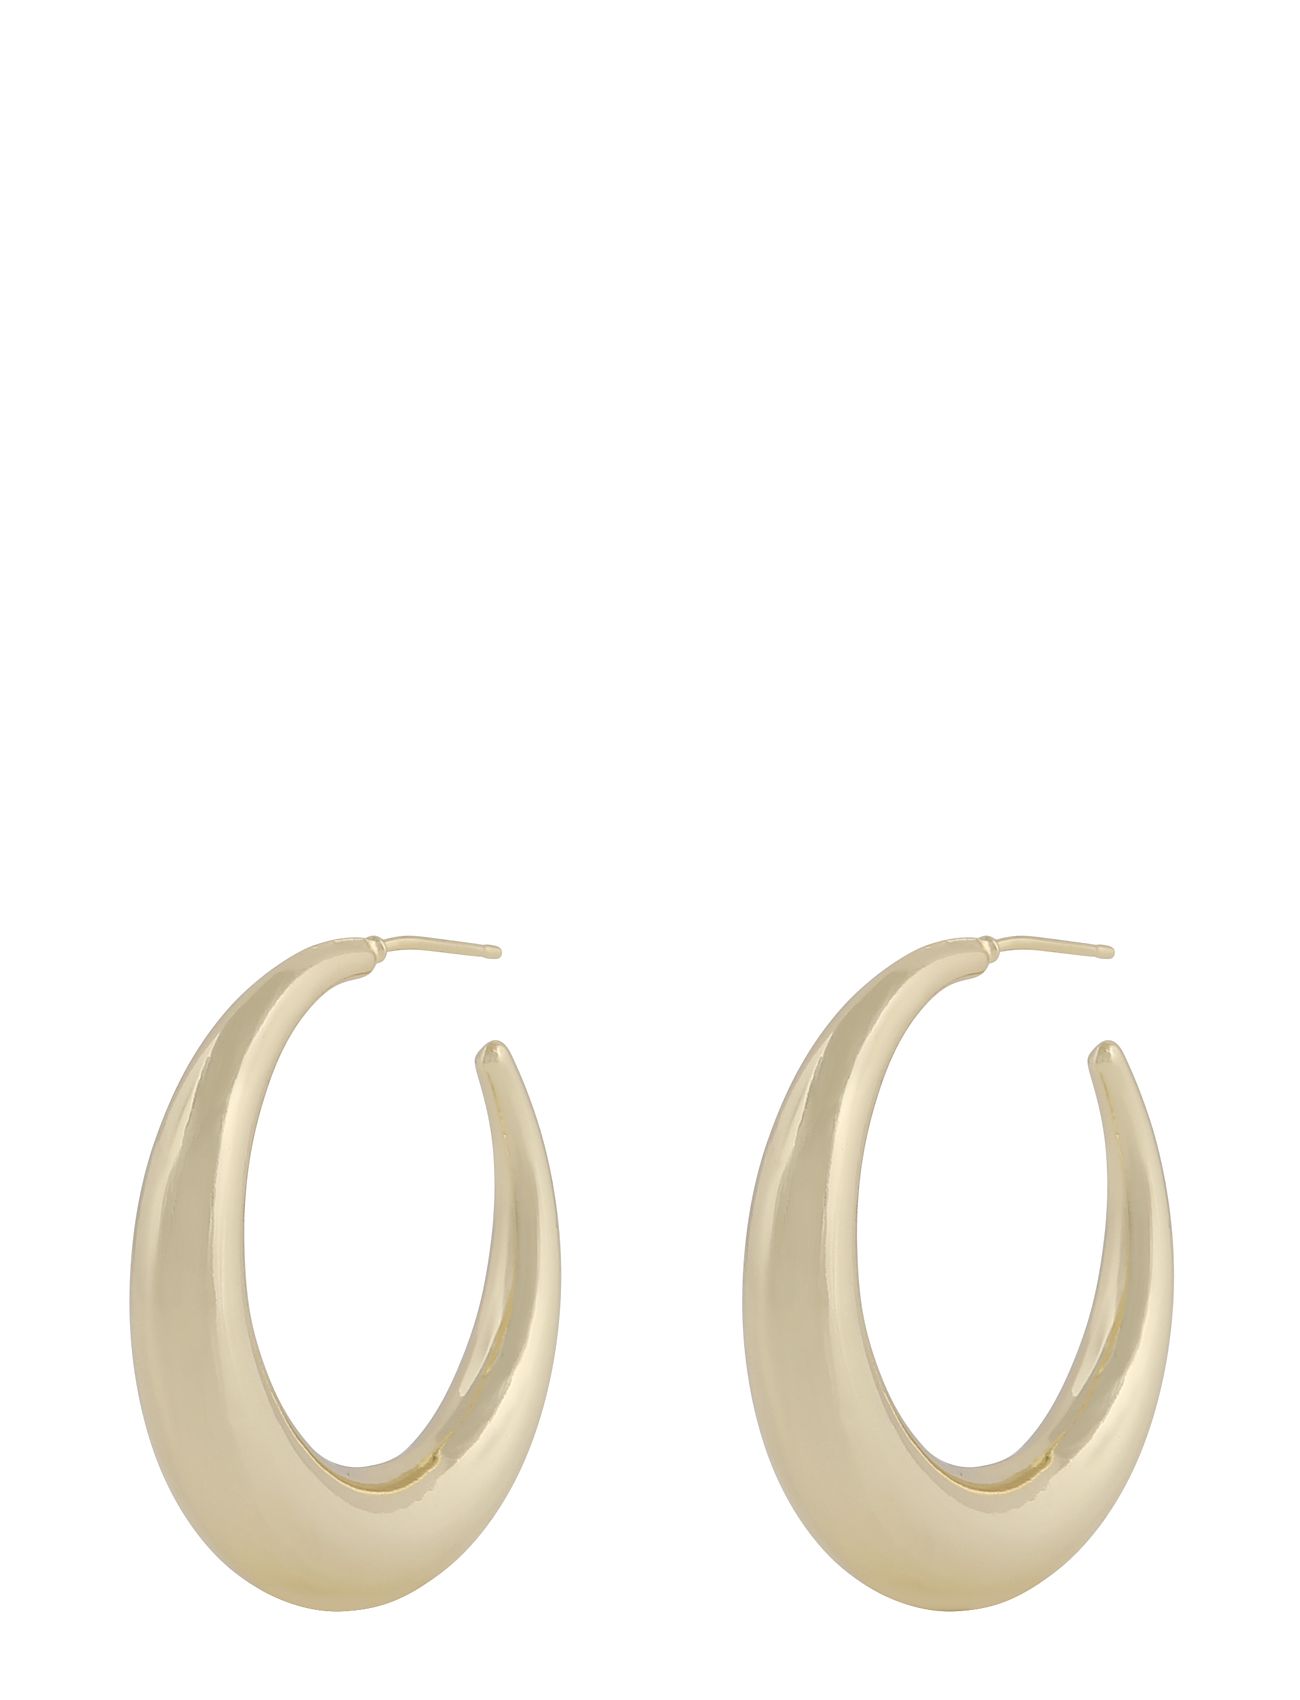 Bella Ring Ear Accessories Jewellery Earrings Hoops Gold SNÖ Of Sweden